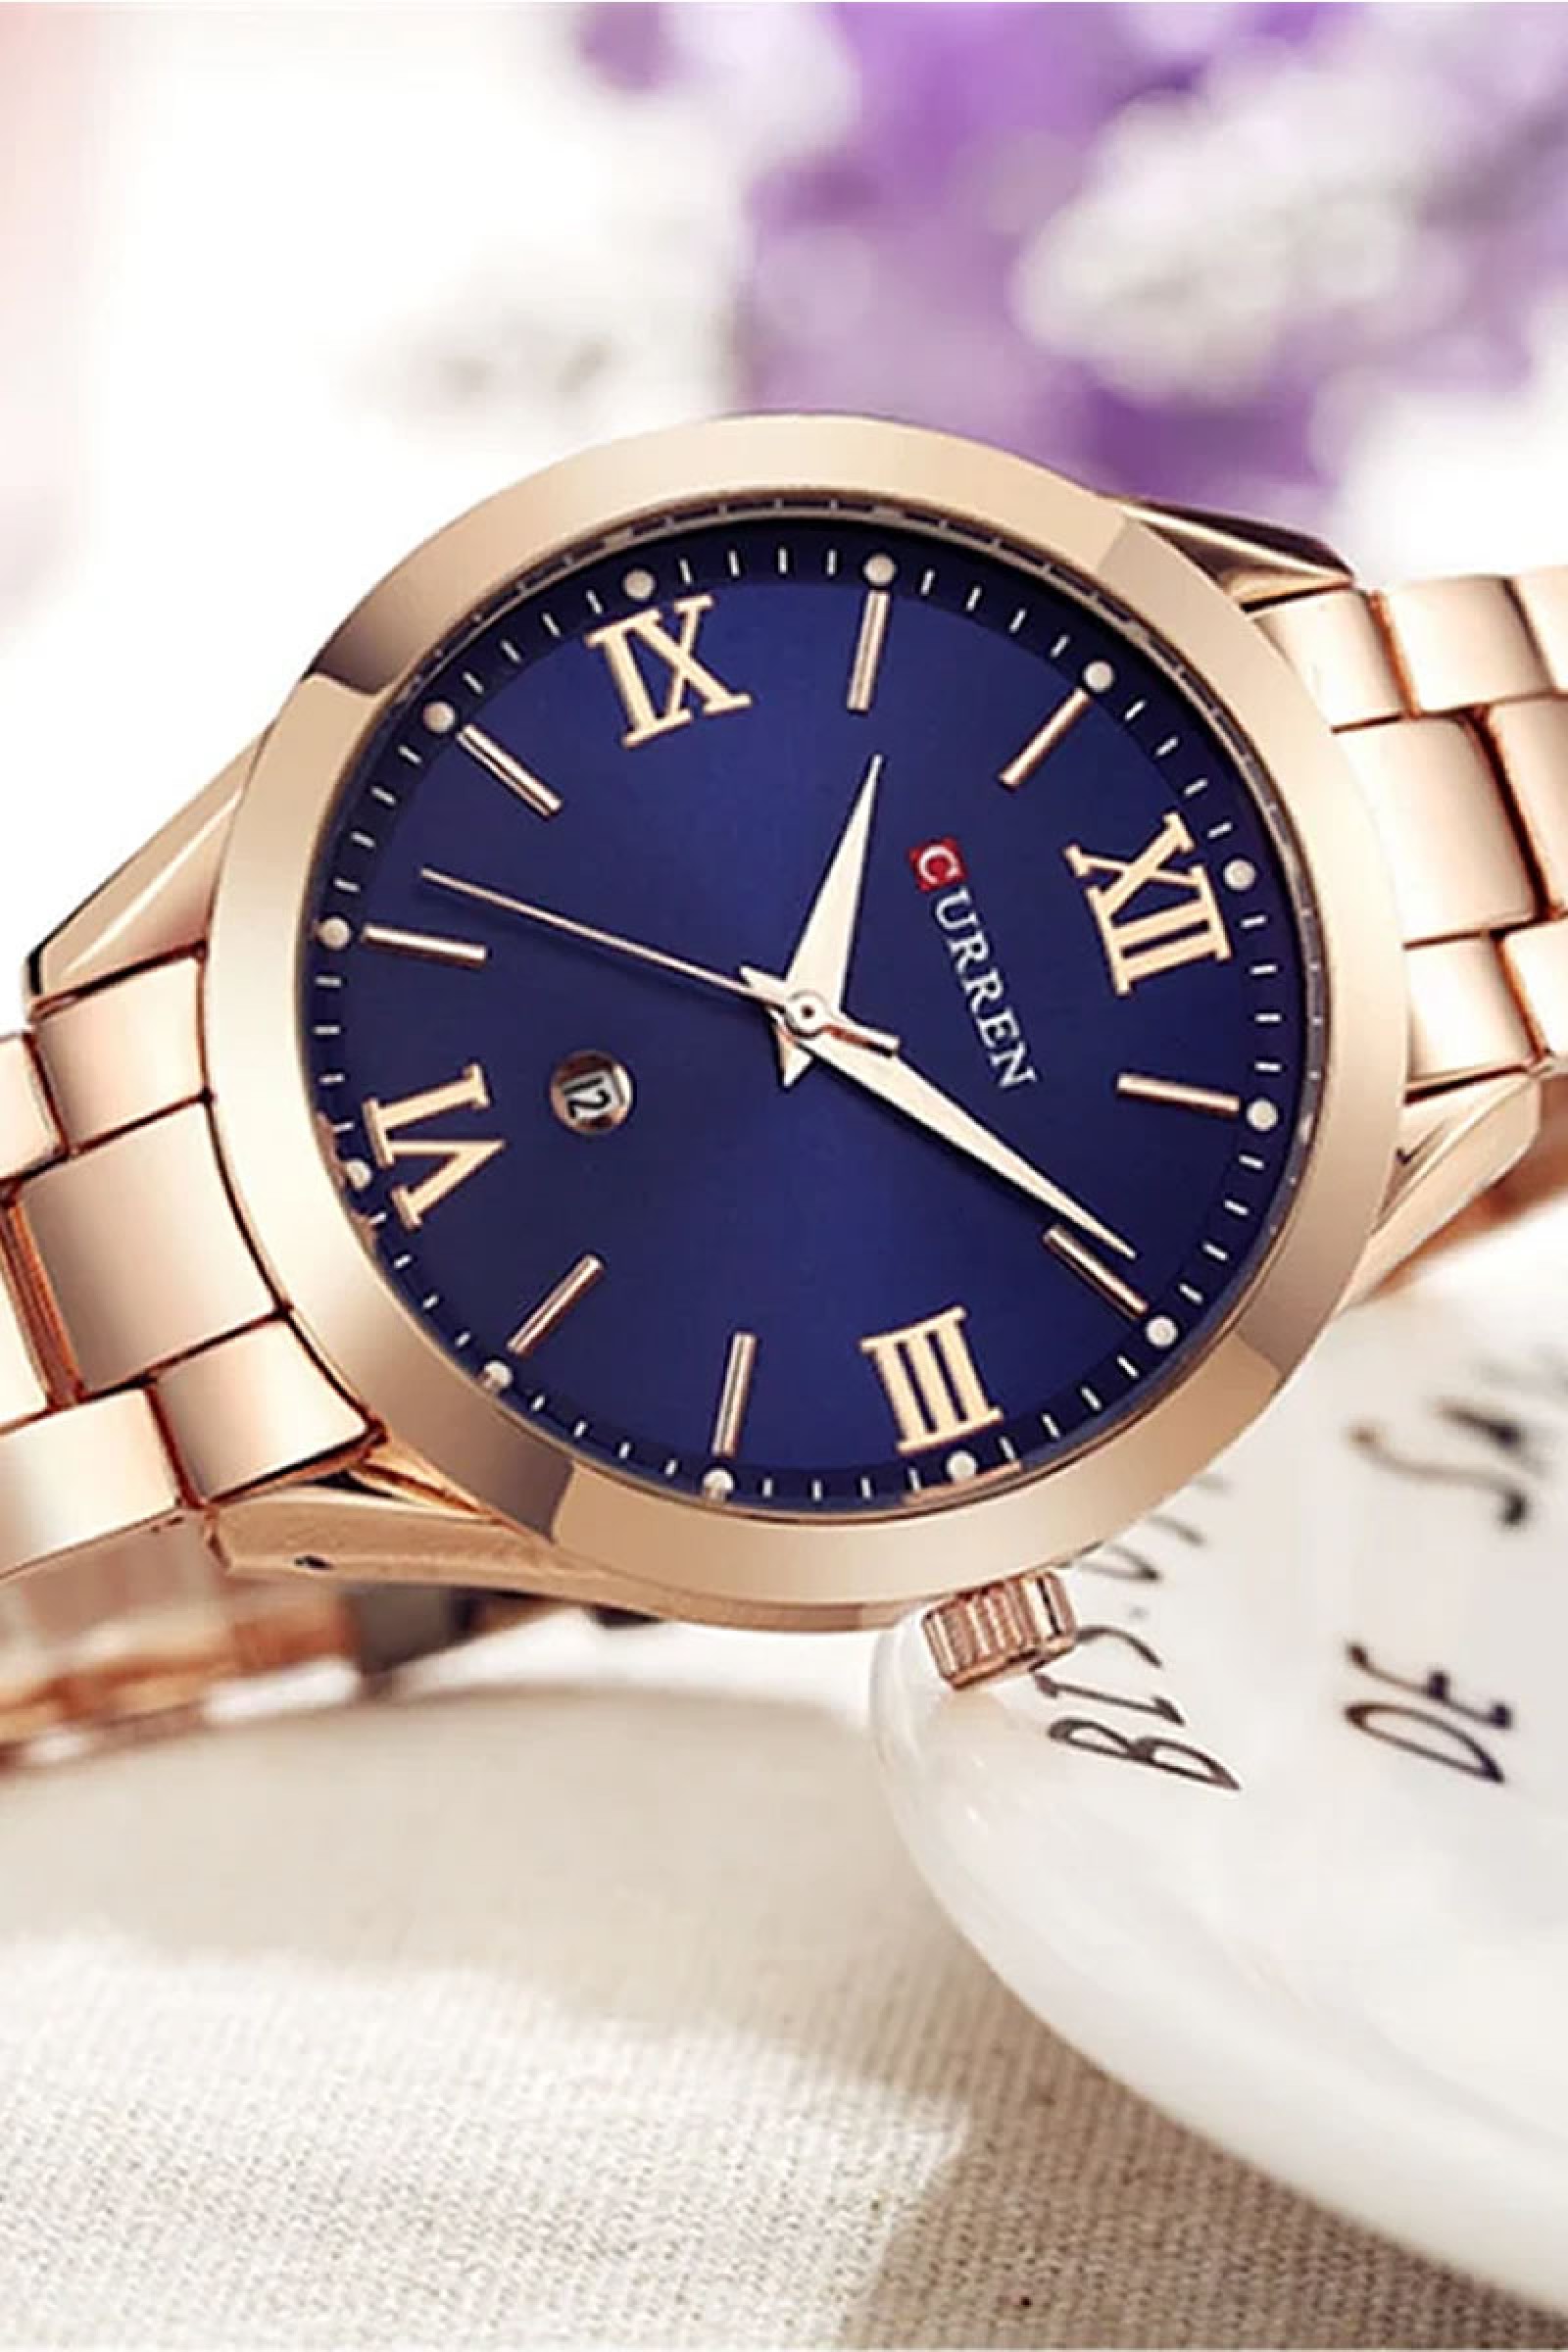 Γυναικείο ρολόι με μπλε καντράν